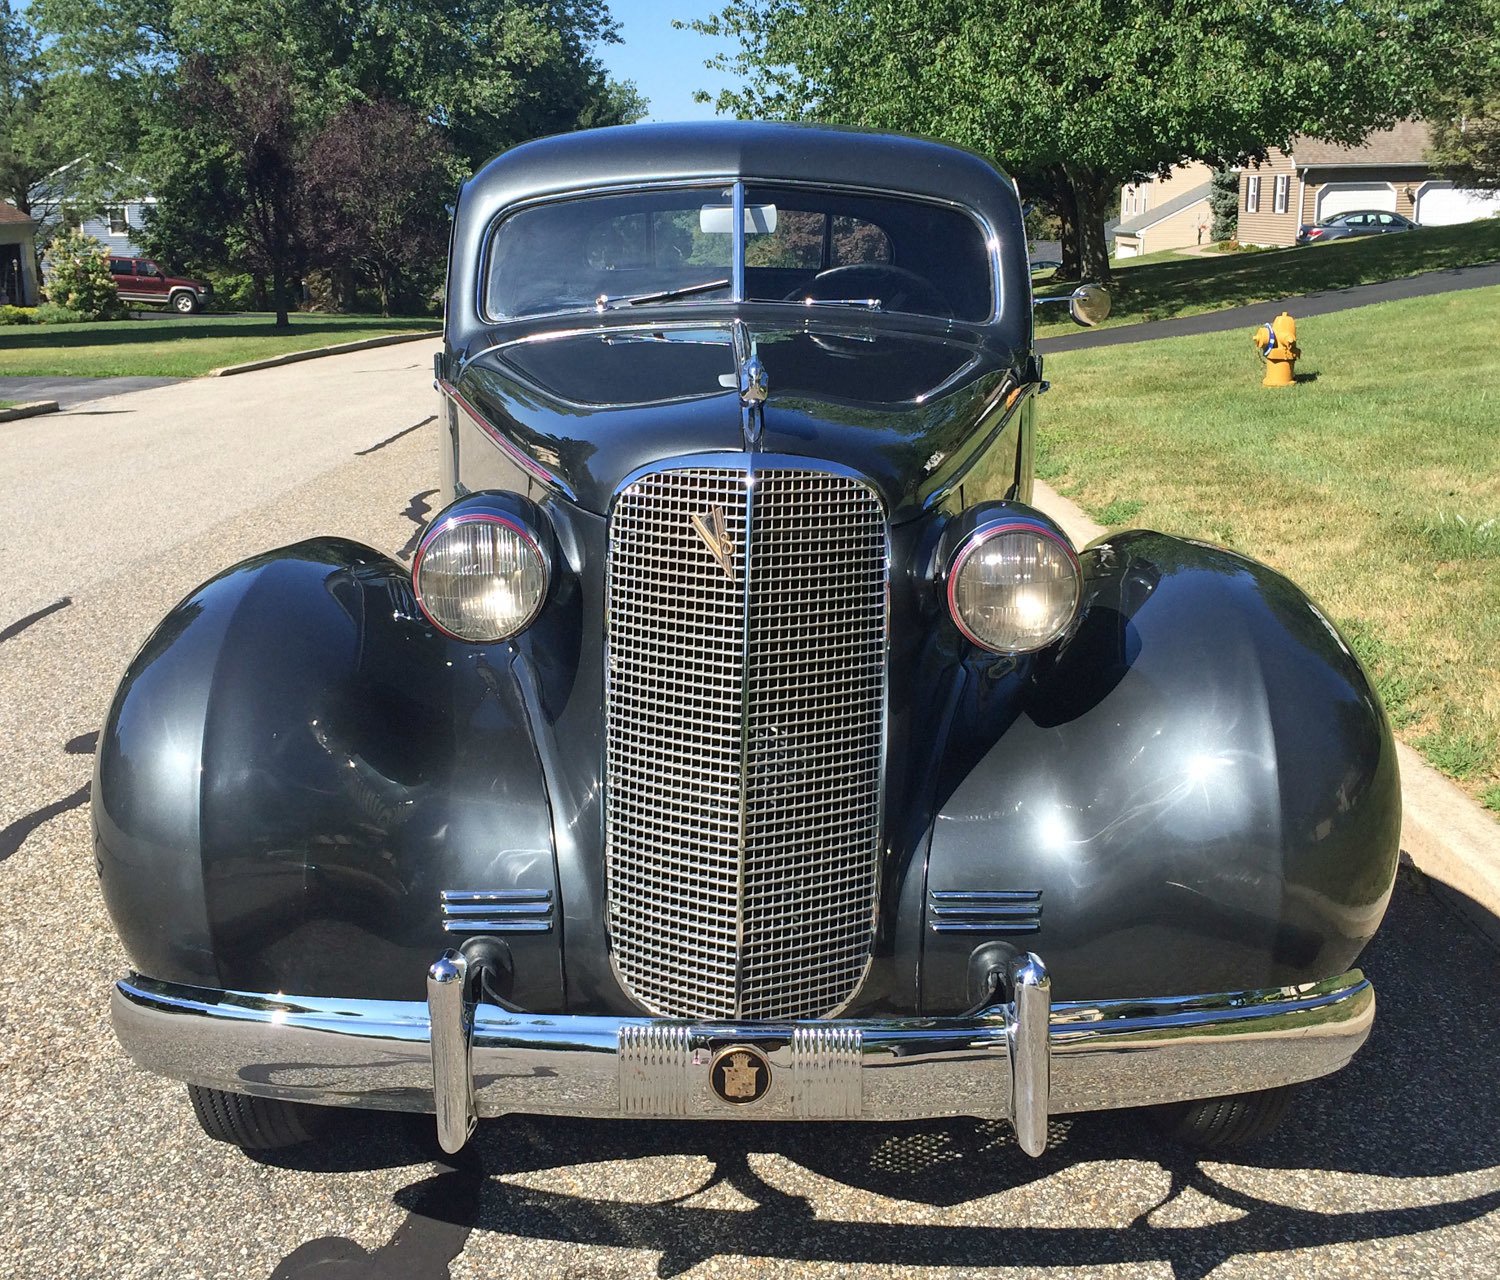 1937 Cadillac Fleetwood